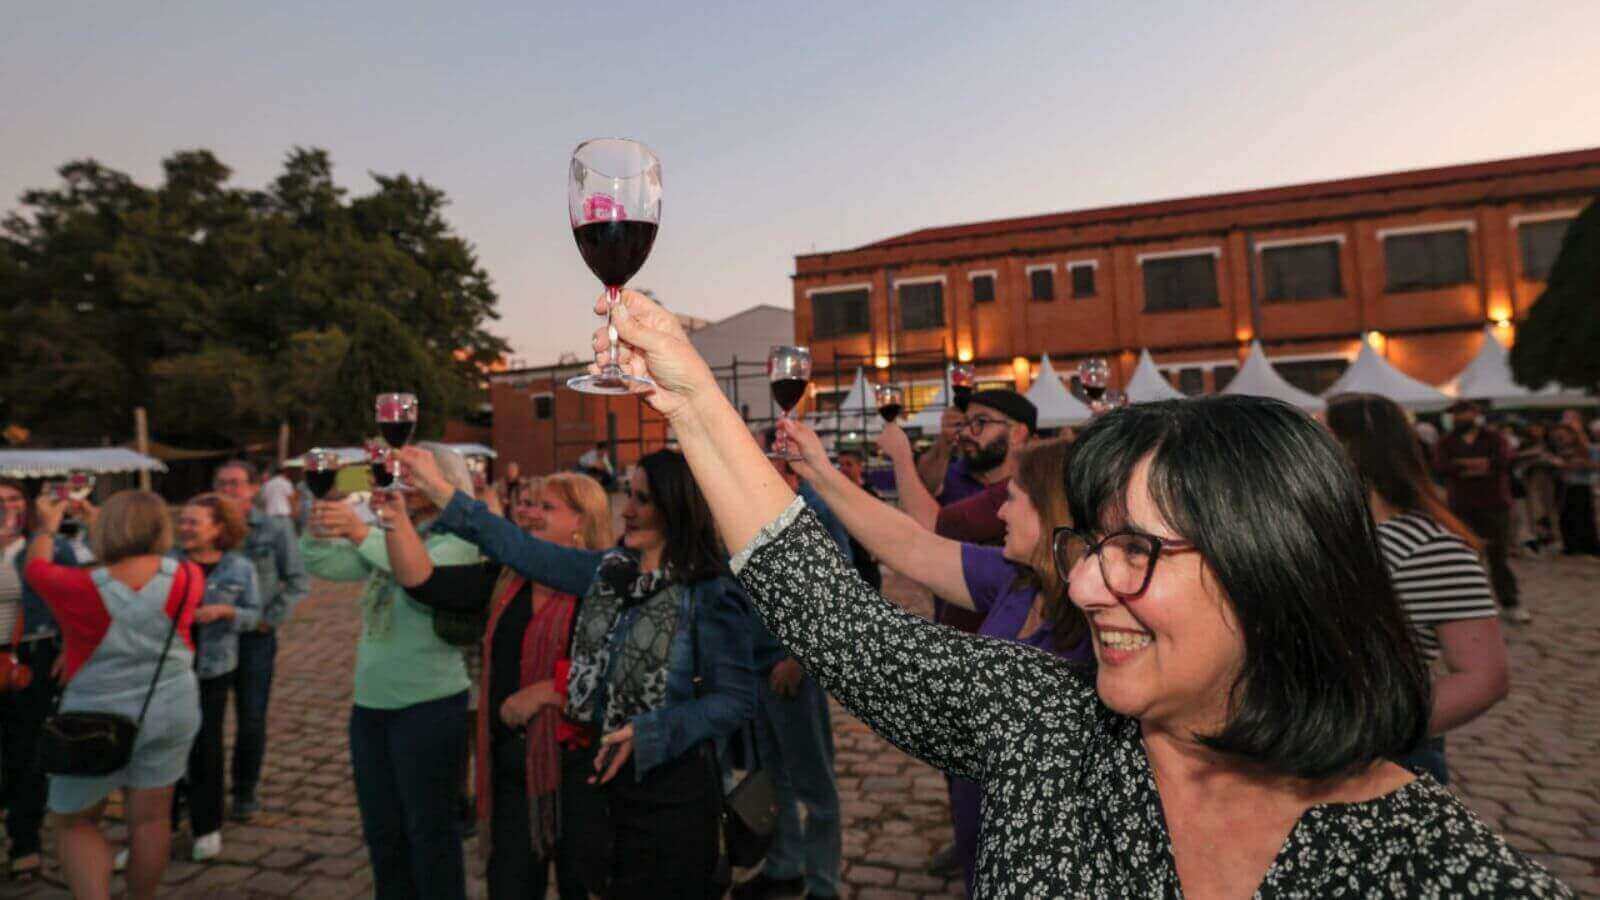 Pessoas brindando com taças de vinho no evento "Dia do Vinho" no Espaço Expressa, em Jundiaí